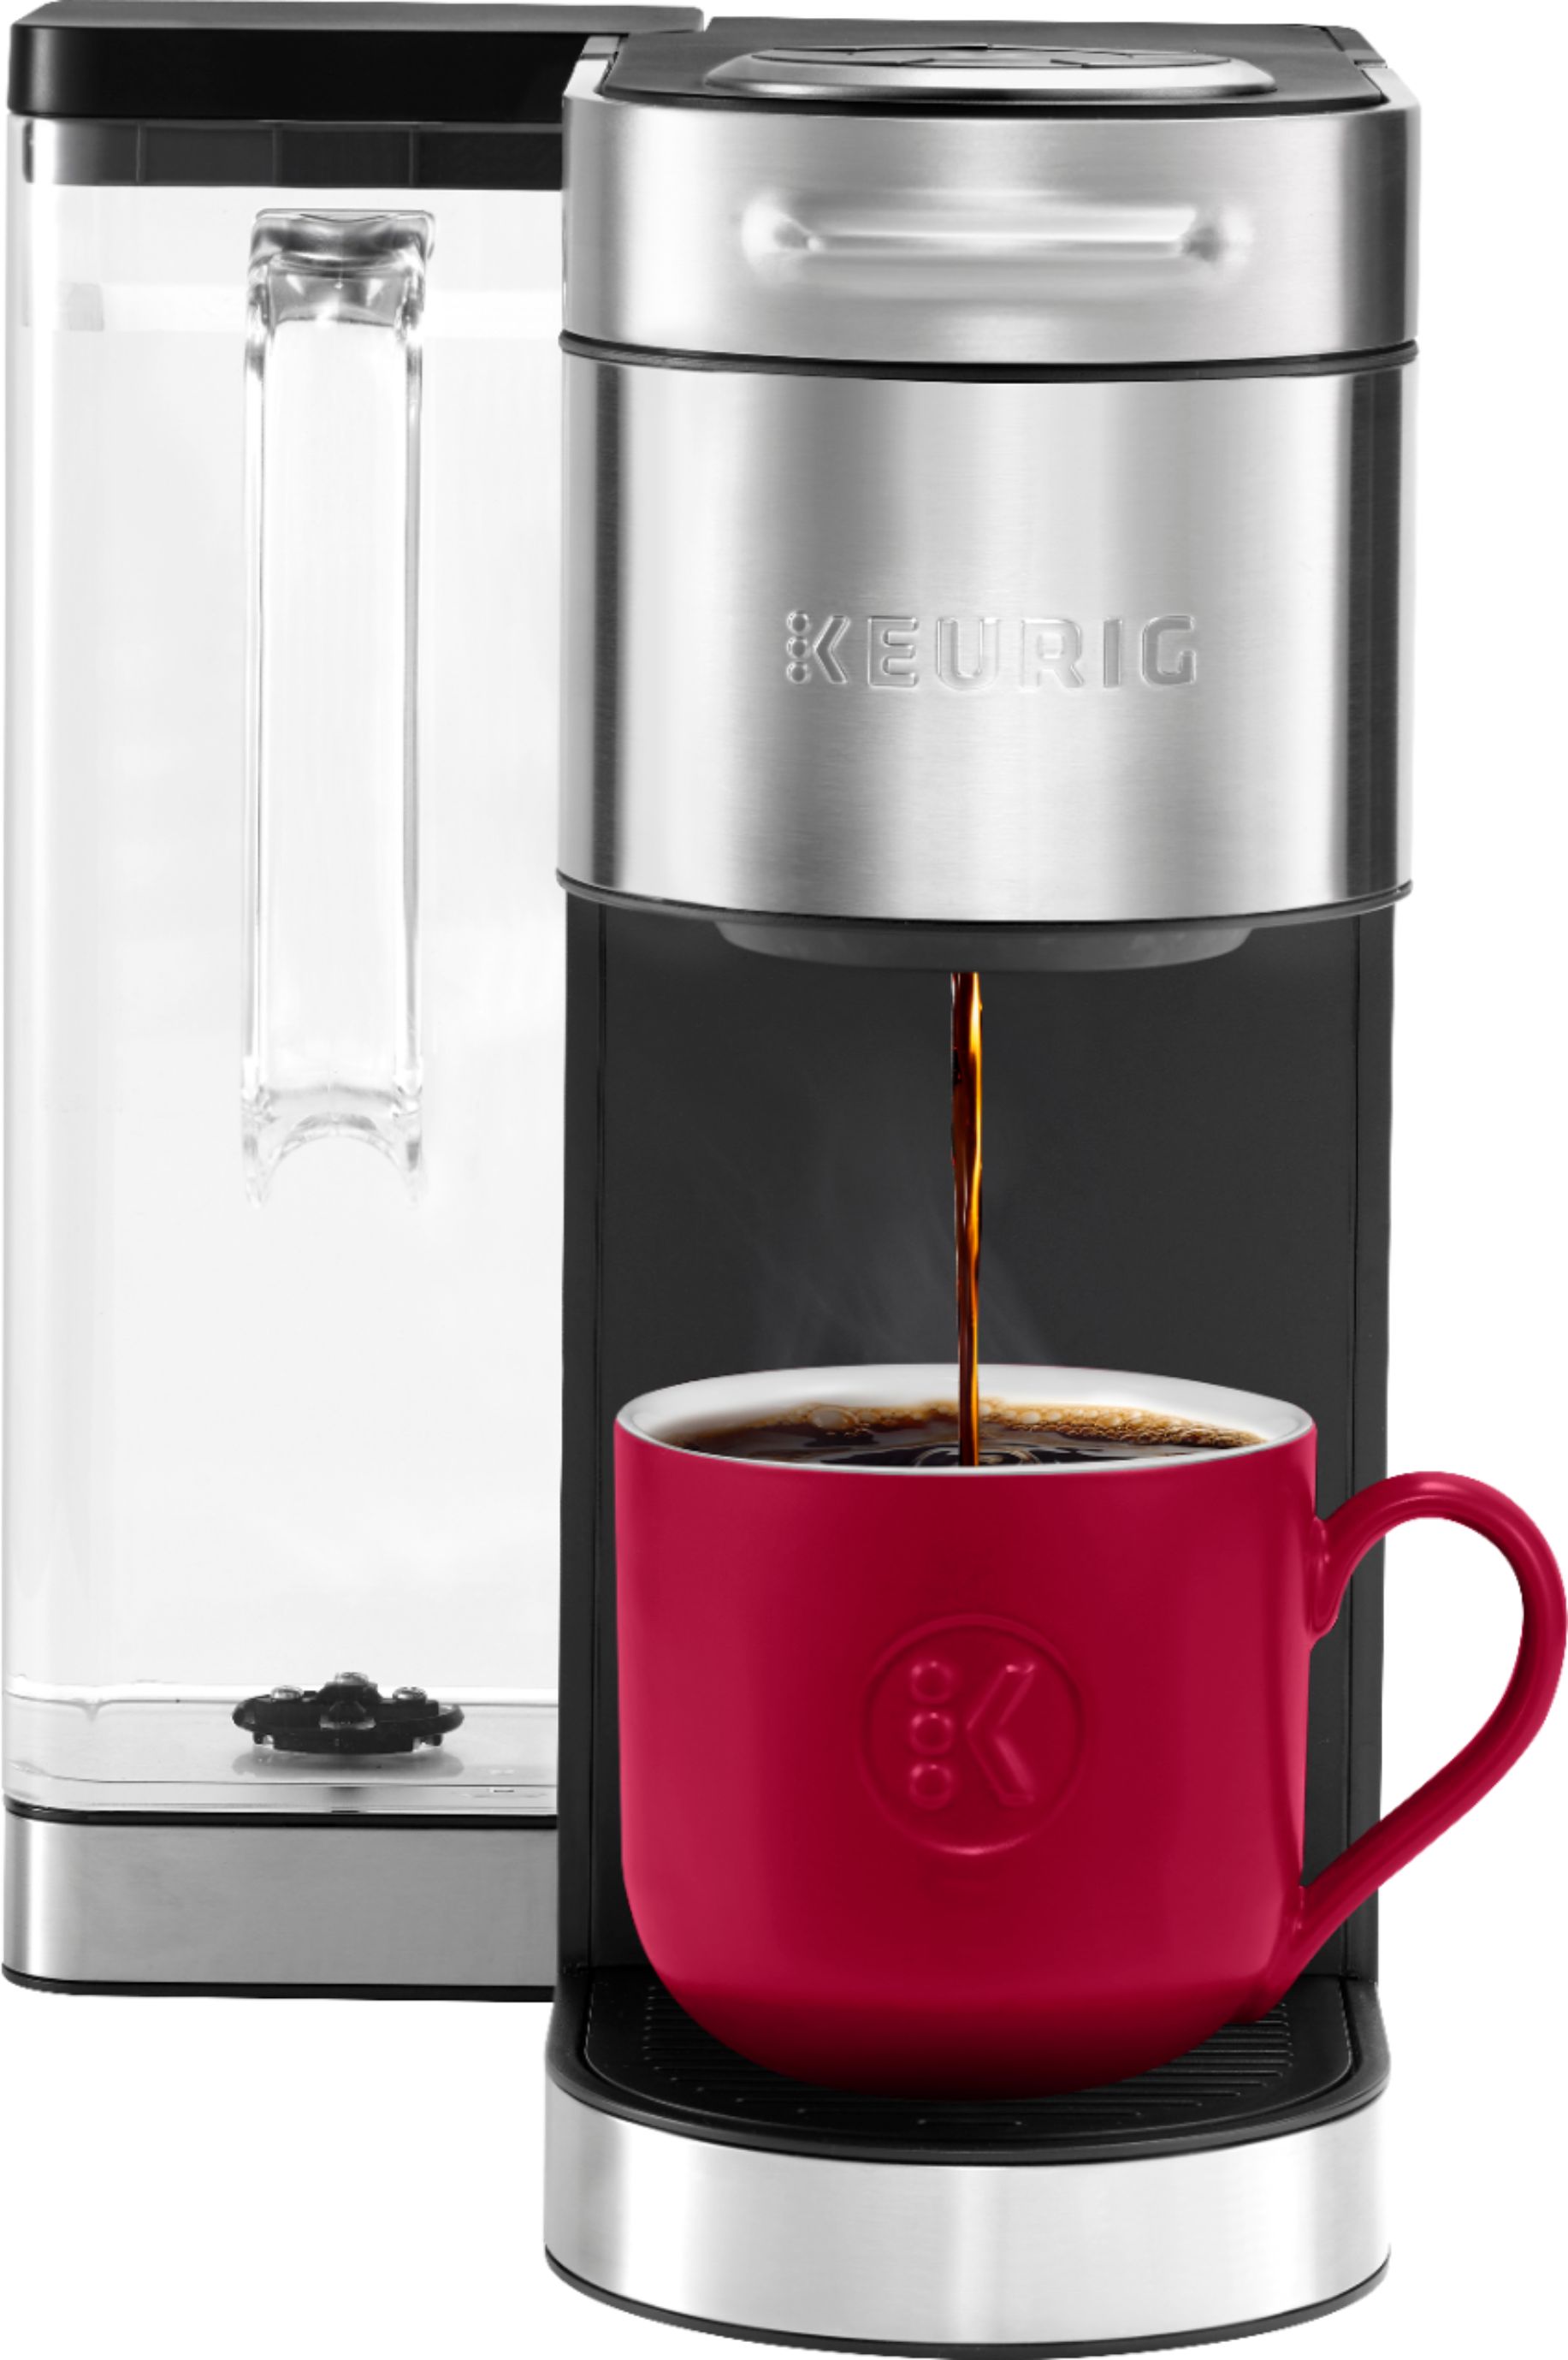 Keurig - K-supreme Plus Coffee Maker - Stainless Steel